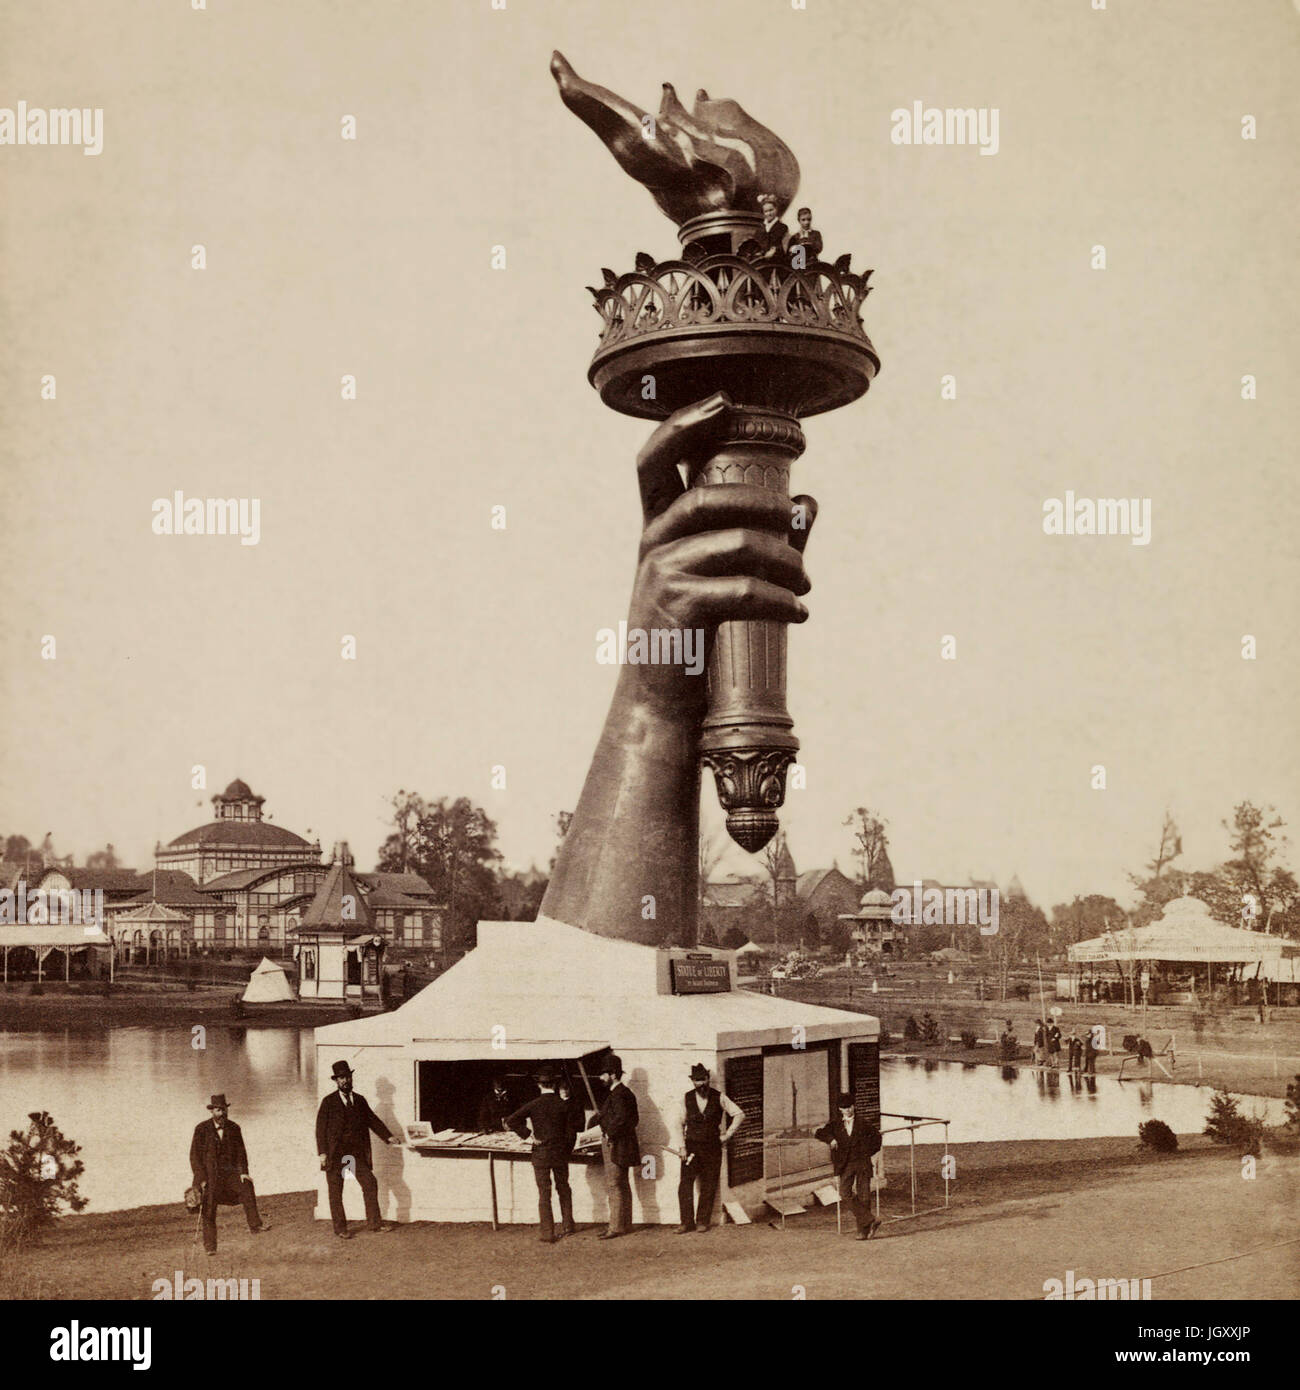 Die Fackel und Bestandteil der Arm der Statue of Liberty, auf dem Display an der 1876 Centennial Exhibition in Philadelphia. Informationsstand auf der Basis von Arm und zwei Personen am Geländer unten Flamme der Fackel zu sehen. Stockfoto